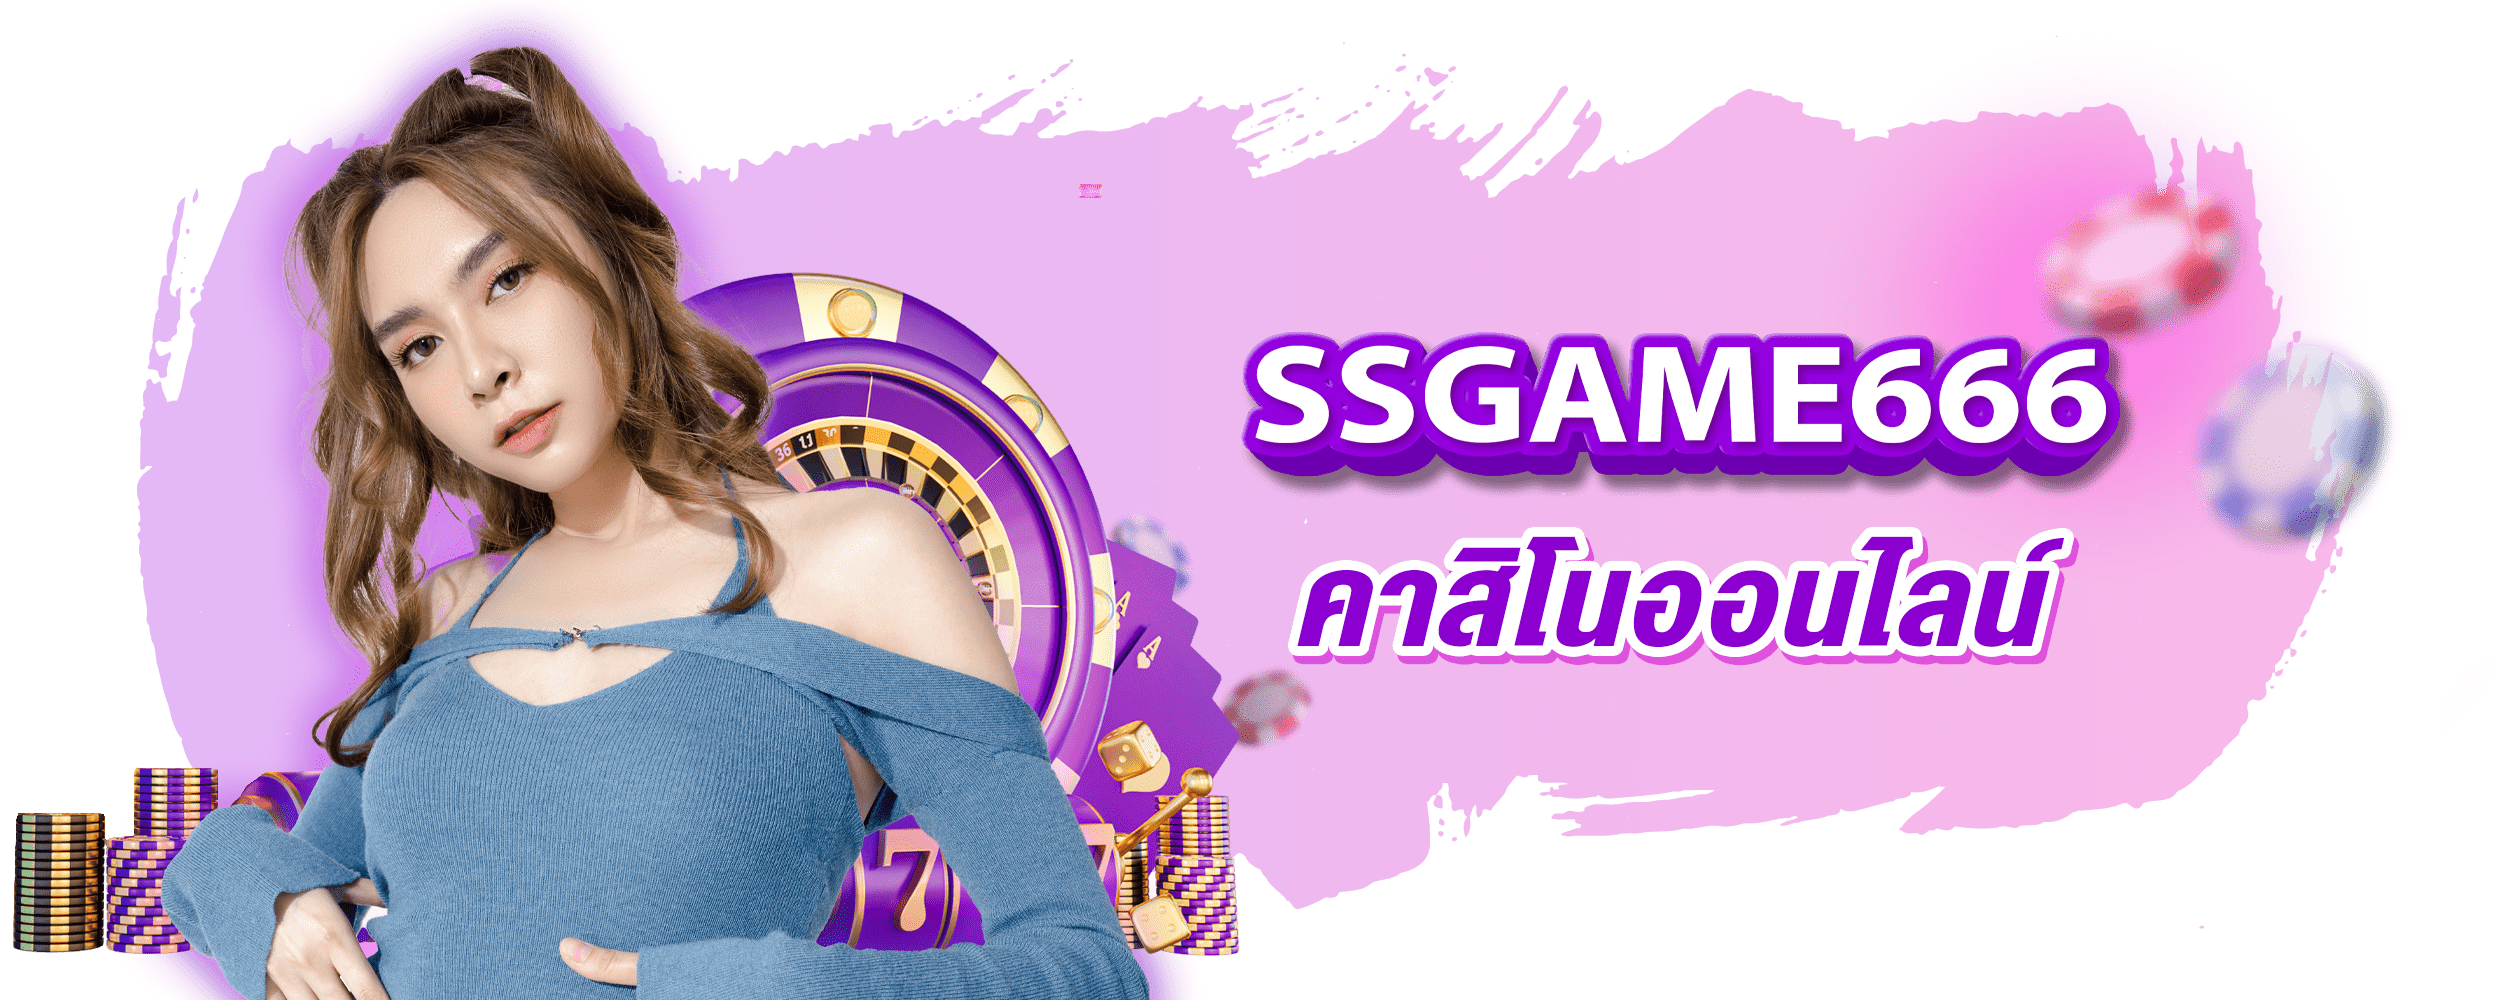 ssgame666 คาสิโนออนไลน์